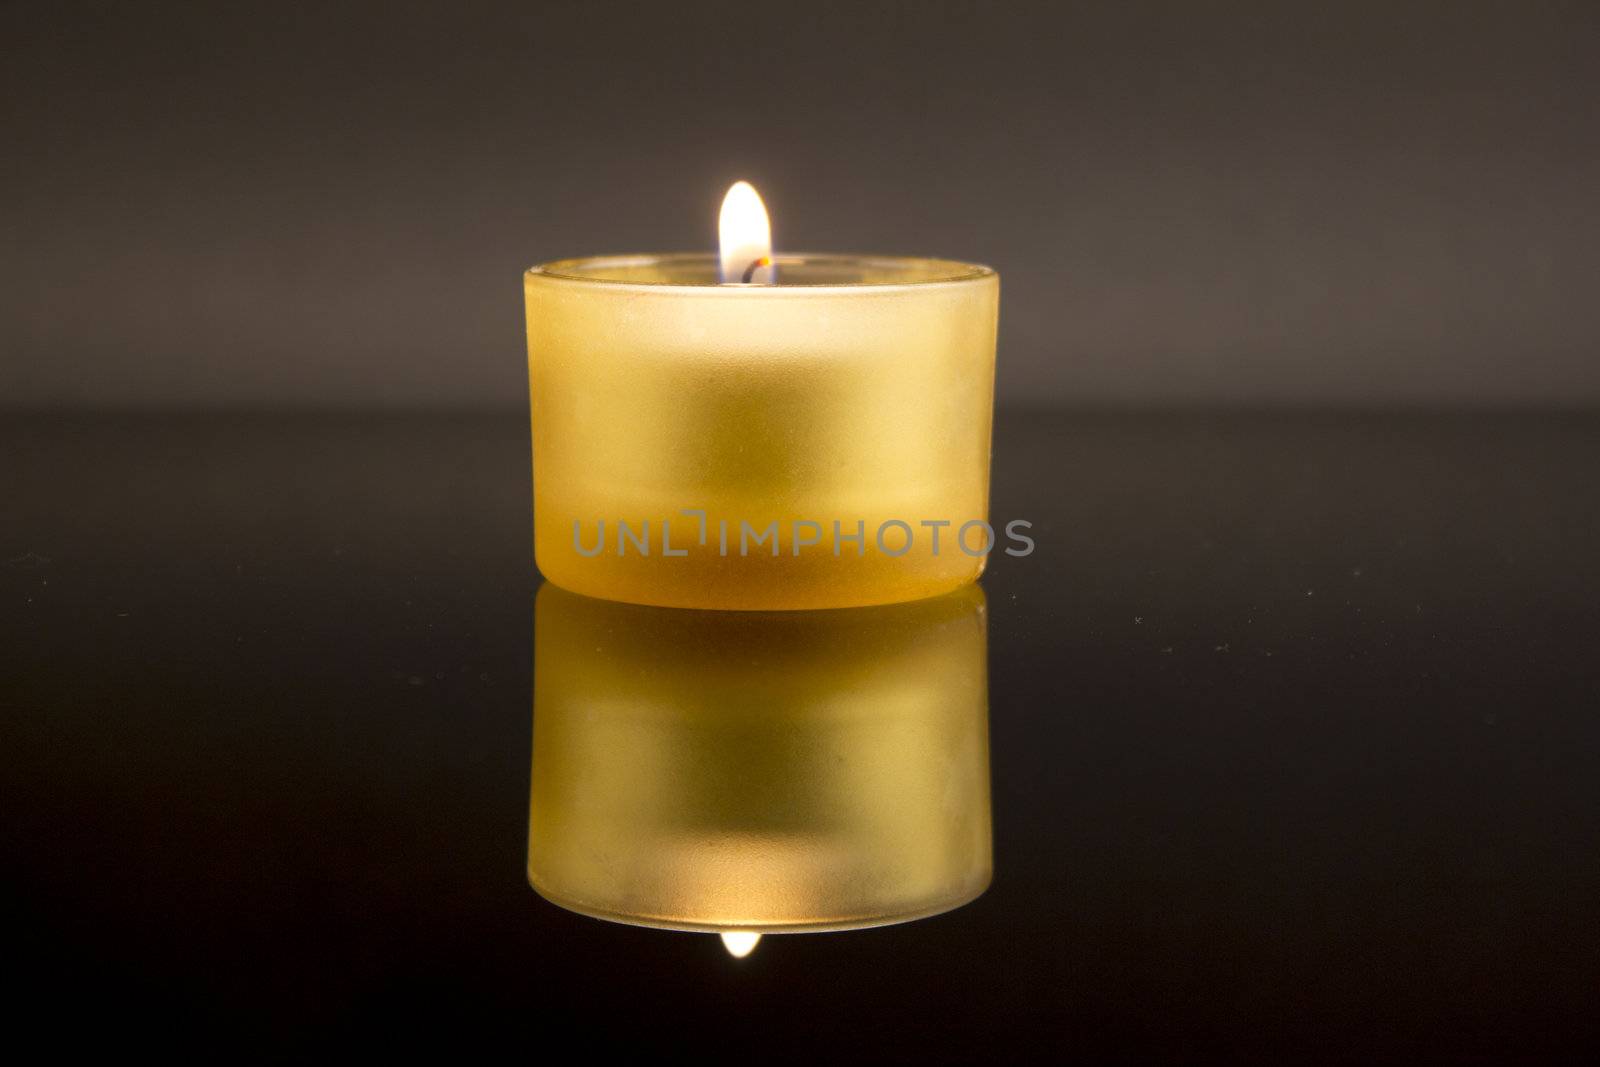 Burning yellow candle